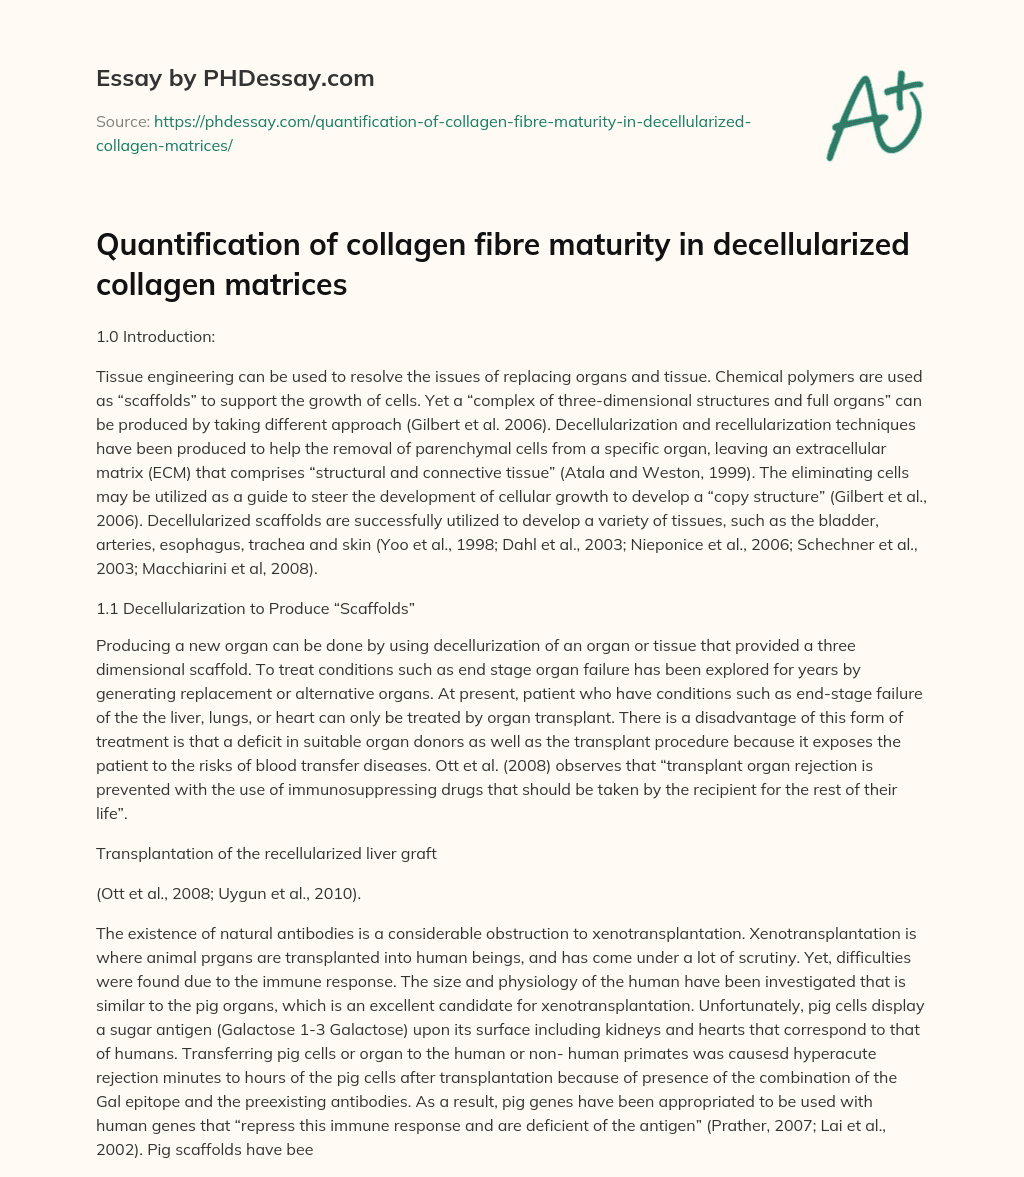 Quantification of collagen fibre maturity in decellularized collagen matrices essay